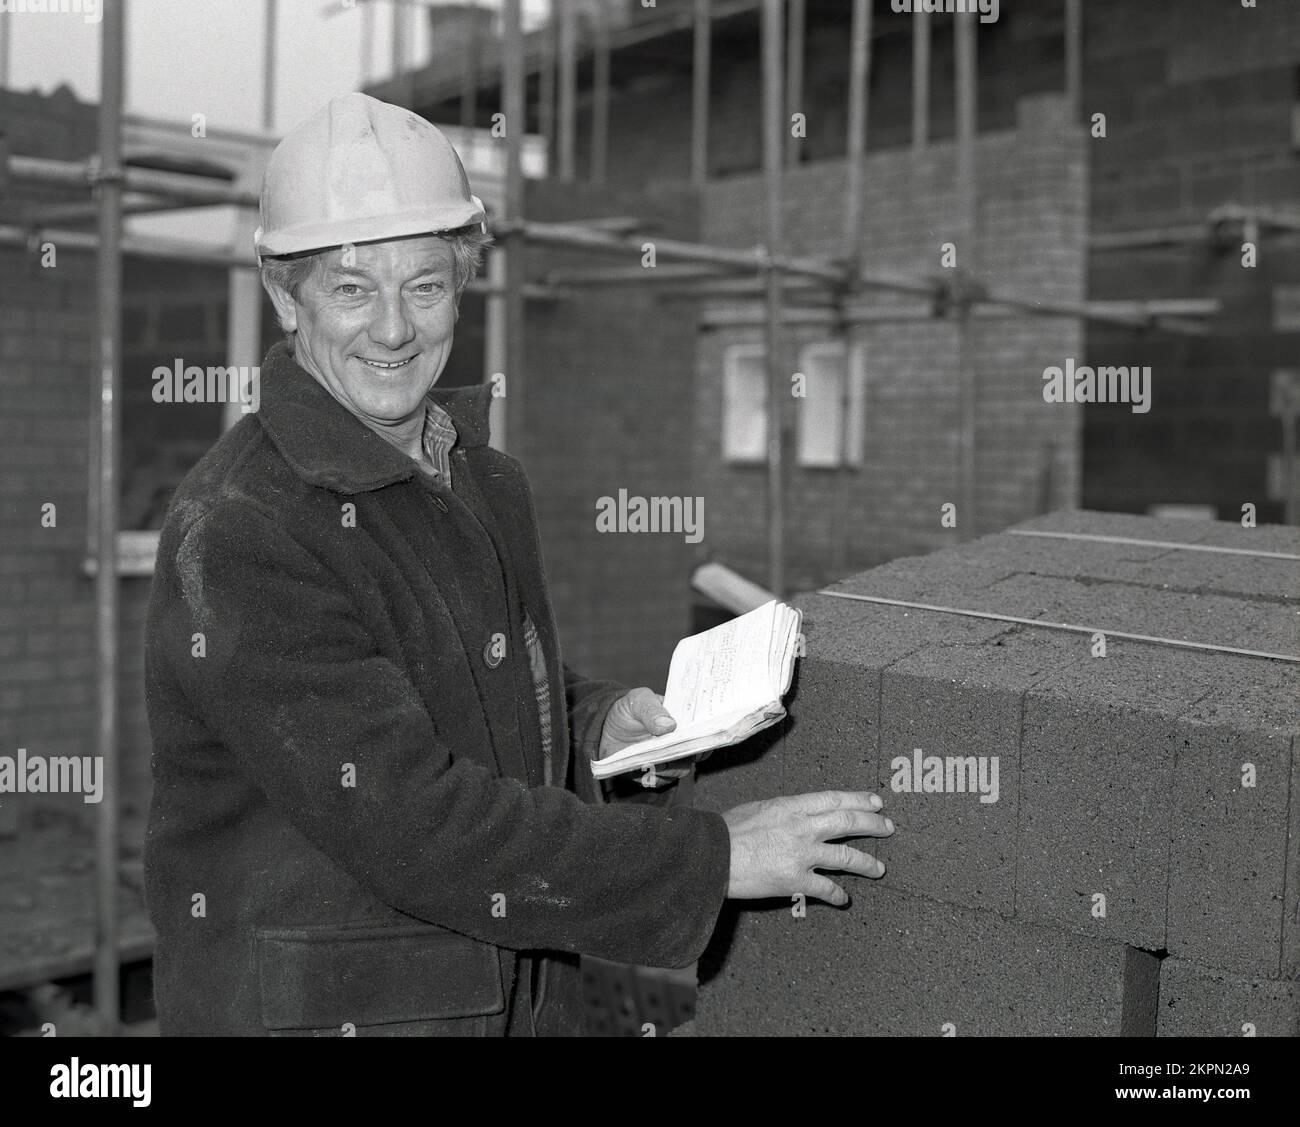 1980s, en un sitio de construcción de viviendas, un capataz en una chaqueta de burro y casco sujetando un cuaderno, mientras comprueba una pila de bloques de hormigón ligero, utilizados en la construcción de nuevas viviendas, Inglaterra, Reino Unido. Foto de stock